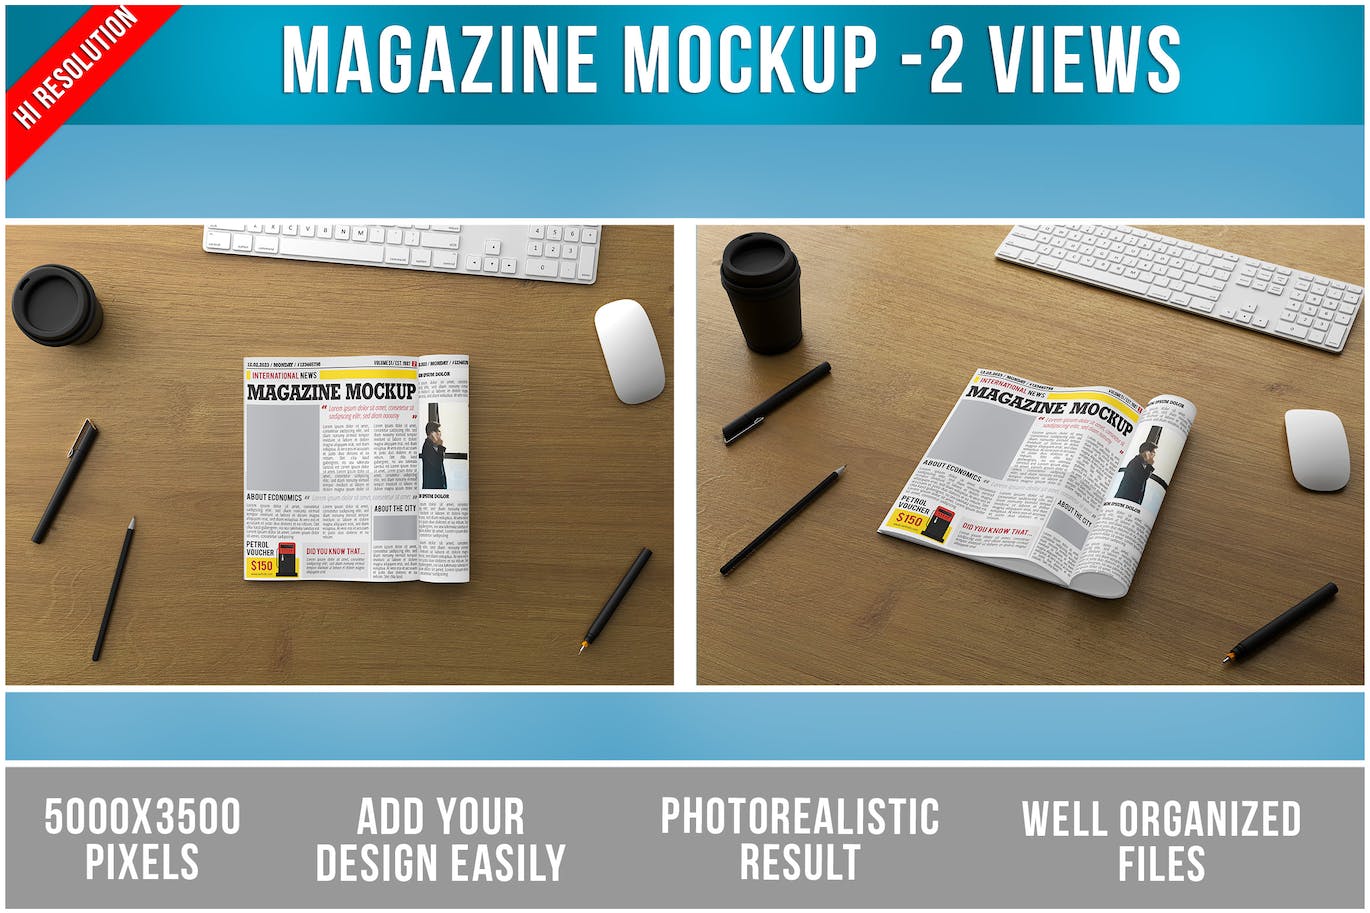 办公桌杂志新闻报纸效果图样机模板 Open Magazine on Wooden Table Mockup 样机素材 第1张